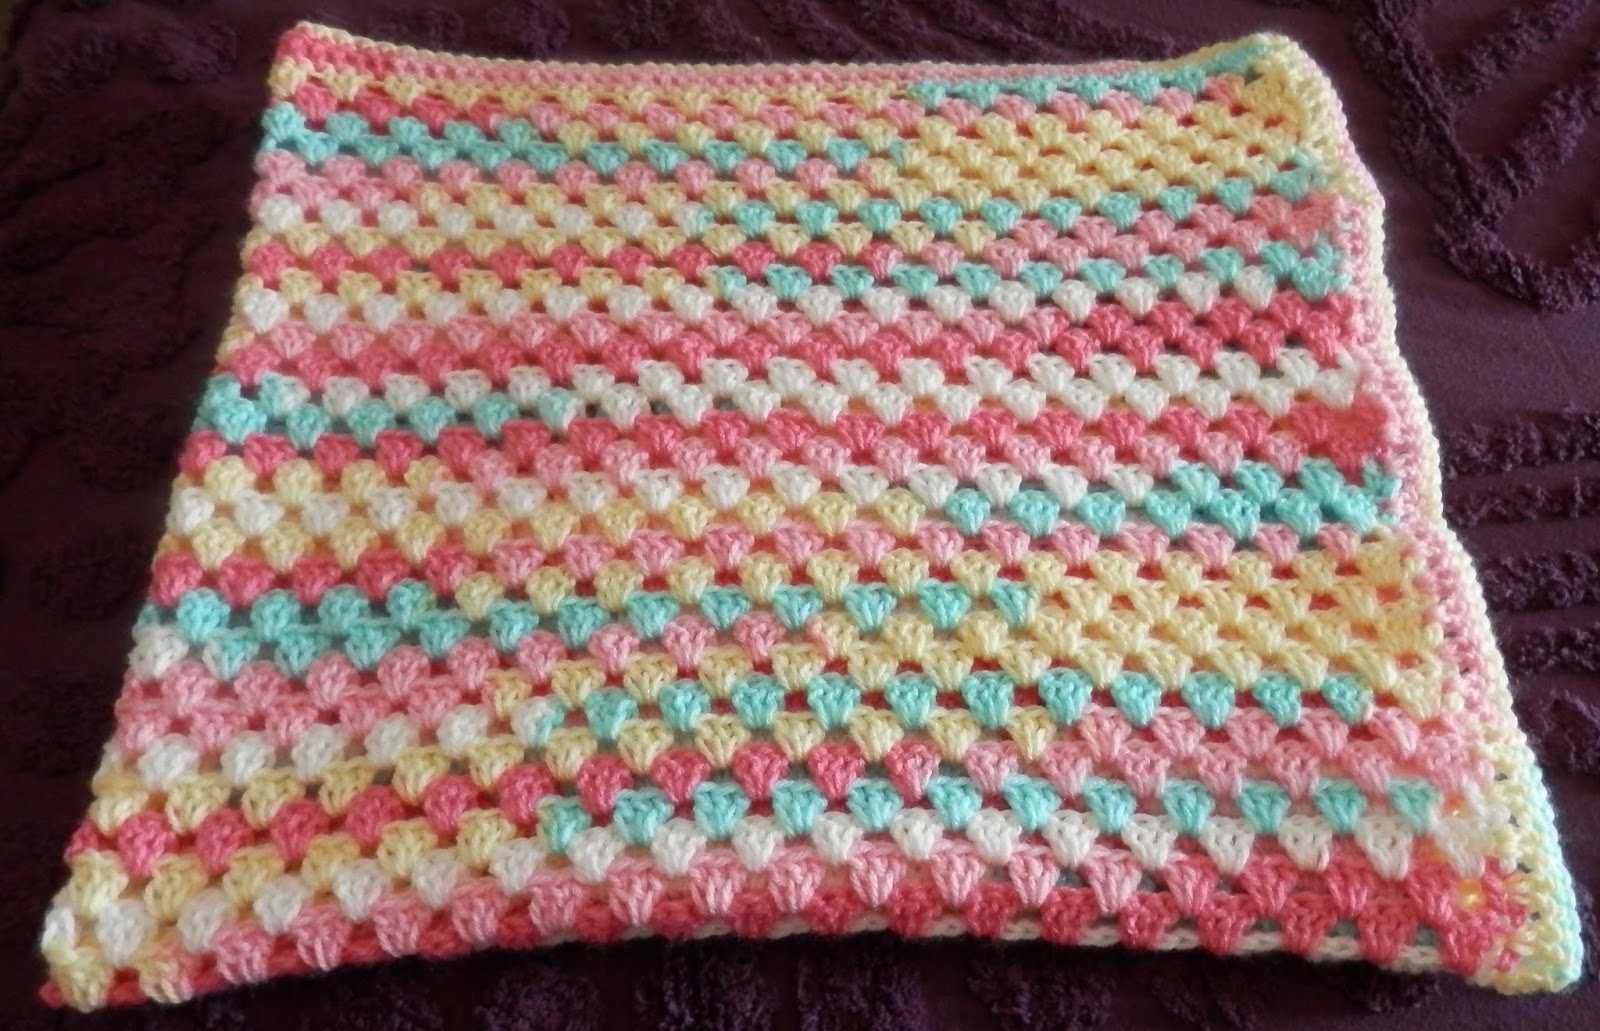 Karens Crocheted Garden of Colors: Suffolk Baby Blanket